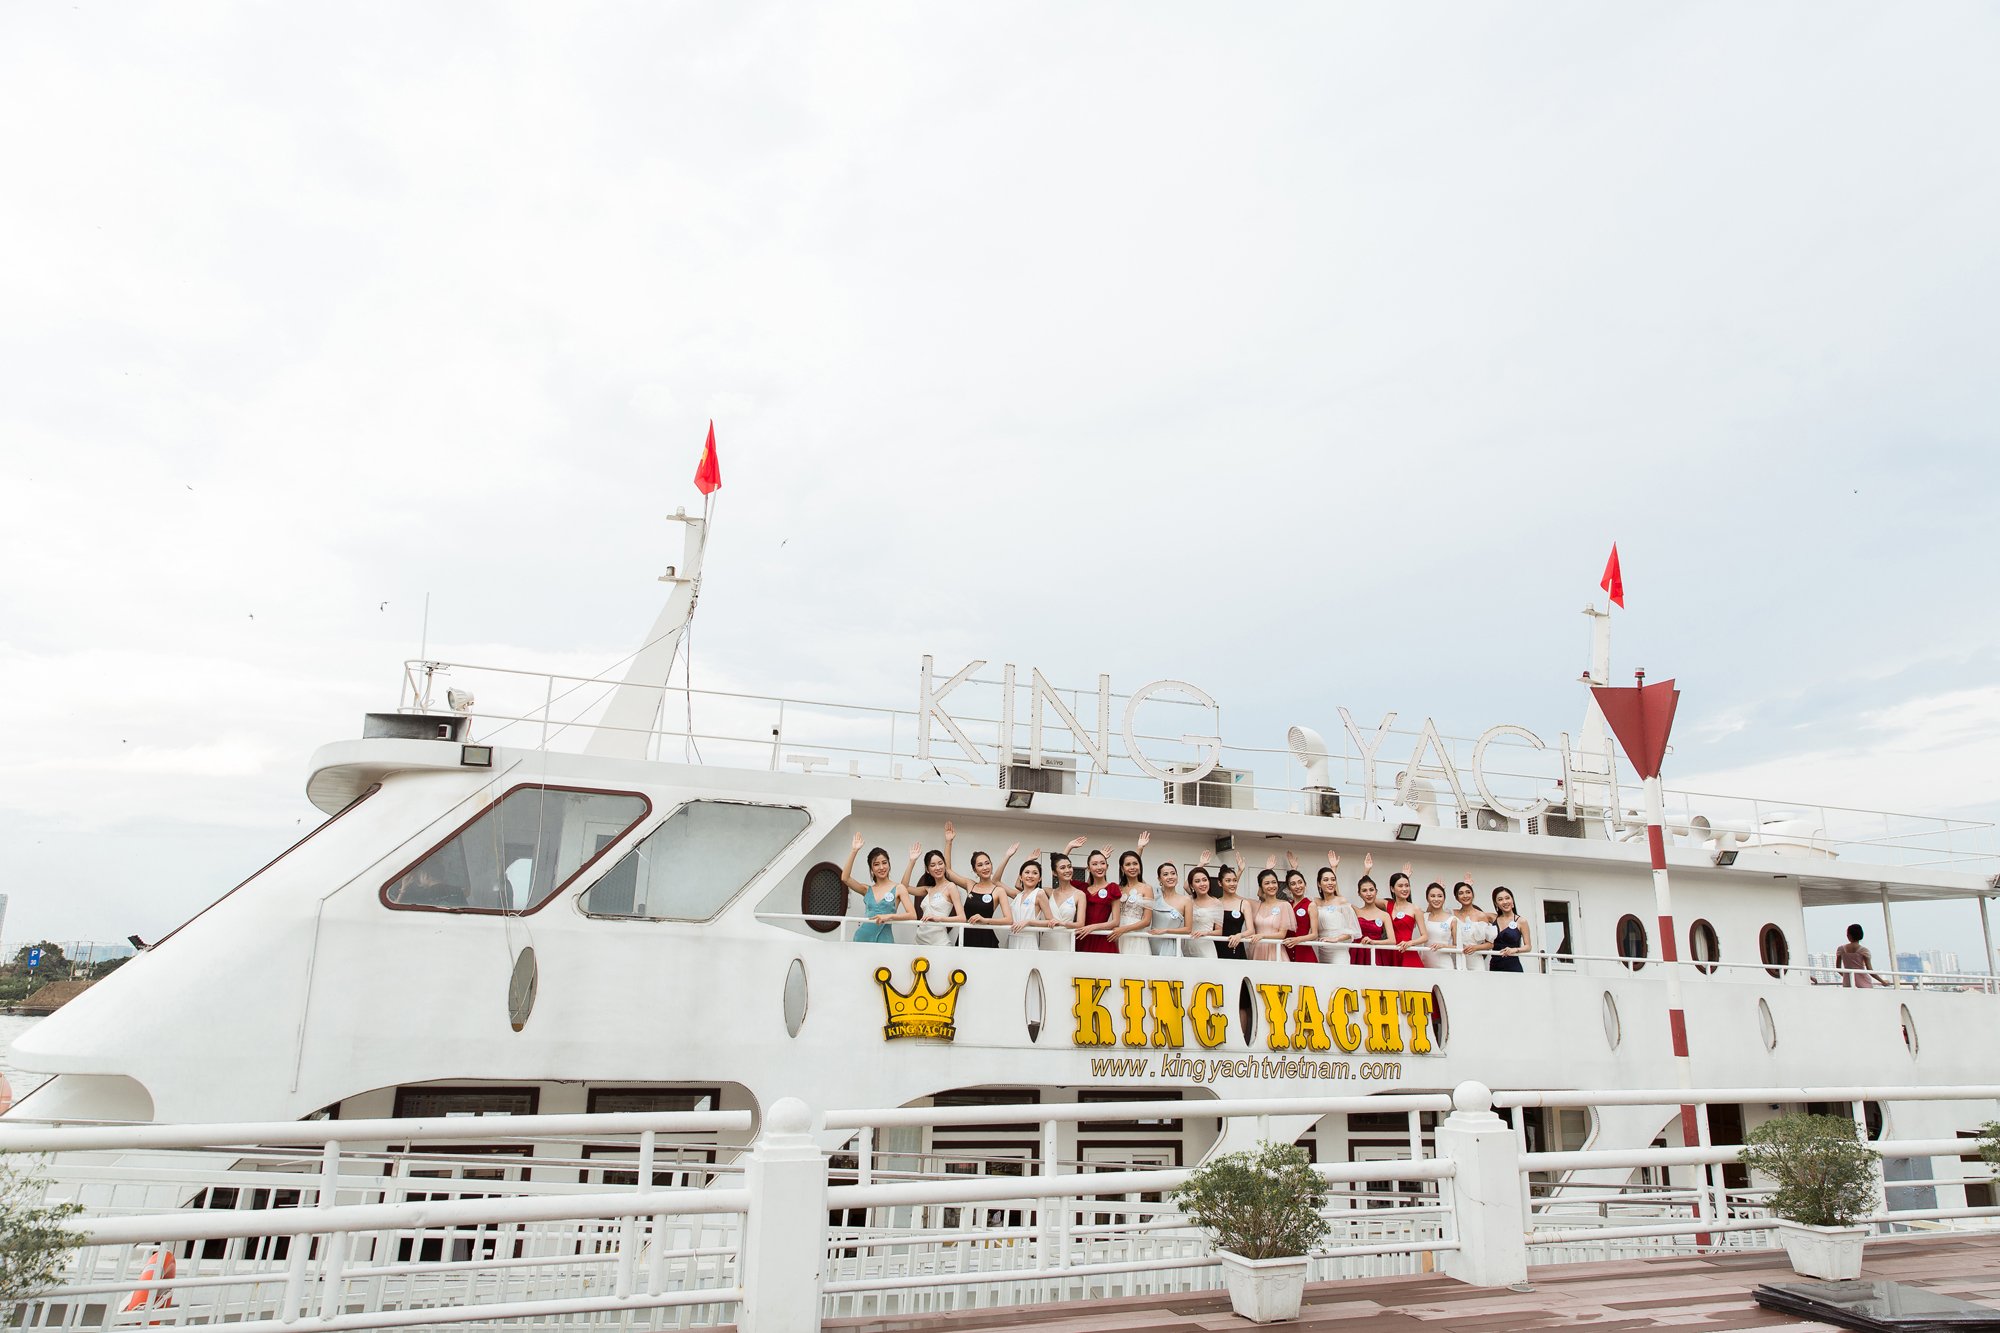 Du thuyền King Yacht - Thoáng vi vu giữa Sài Gòn hoa lệ